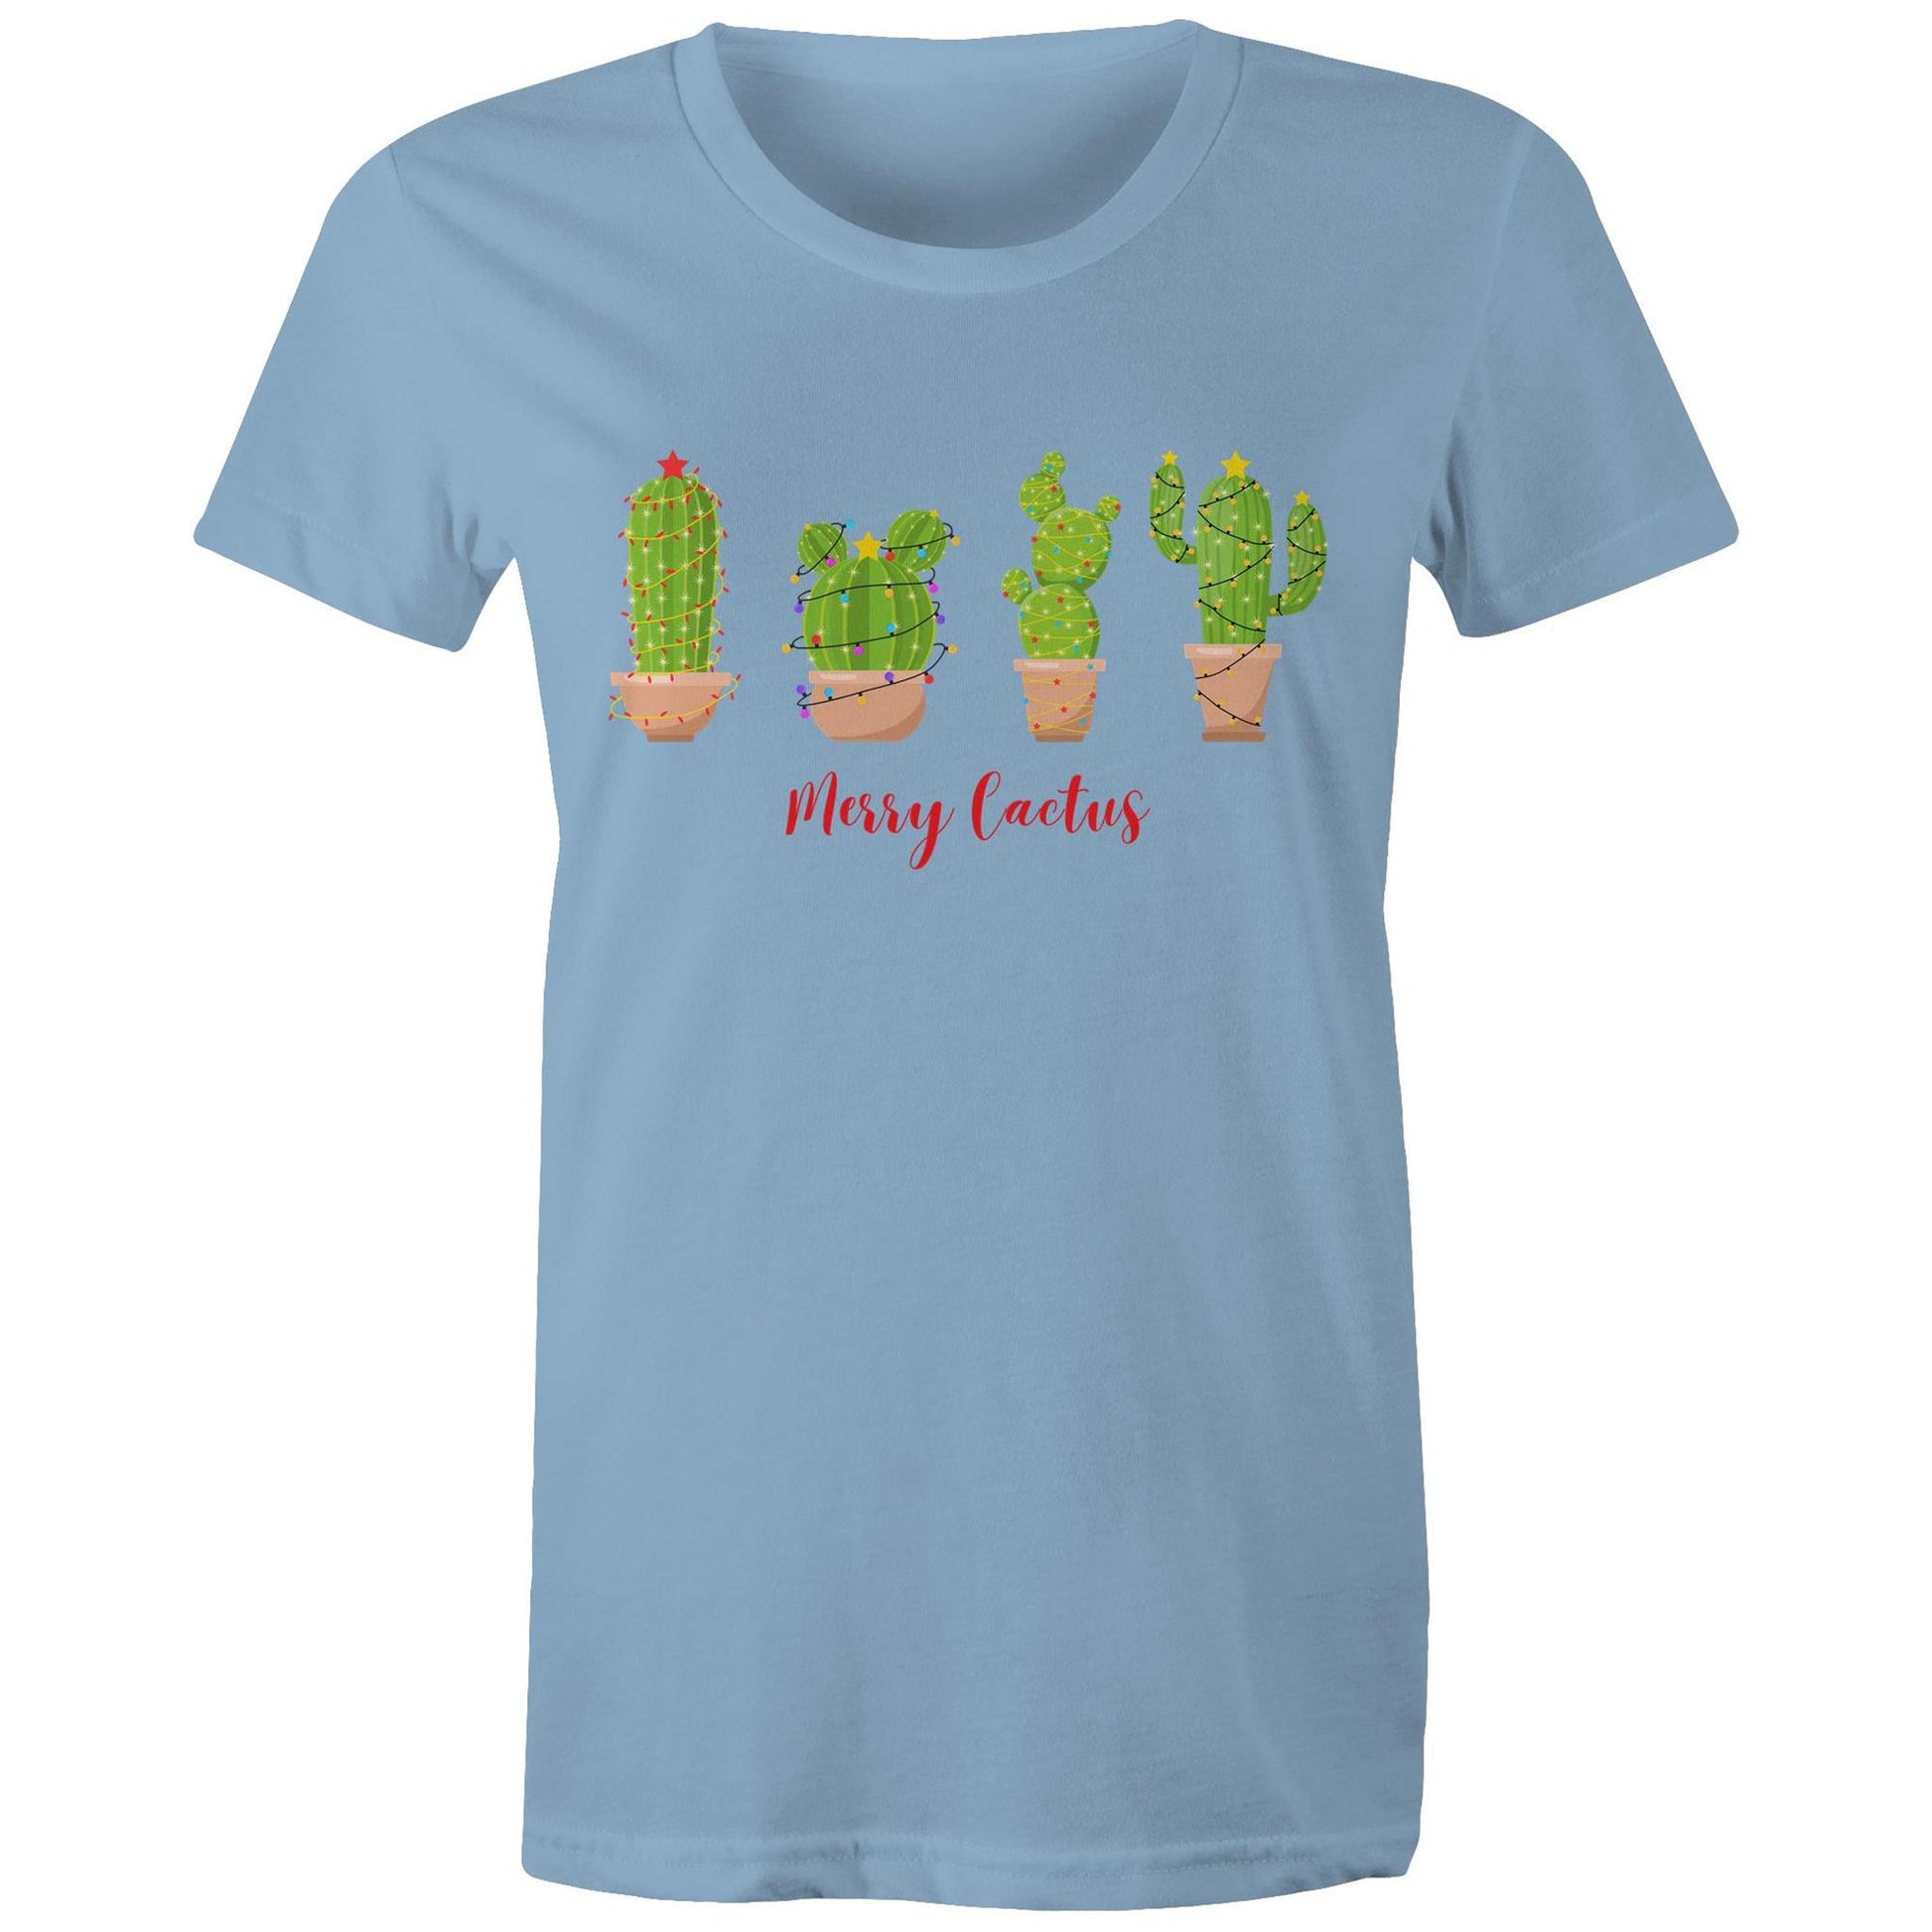 Merry Cactus - Womens T-shirt Carolina Blue Christmas Womens T-shirt Merry Christmas